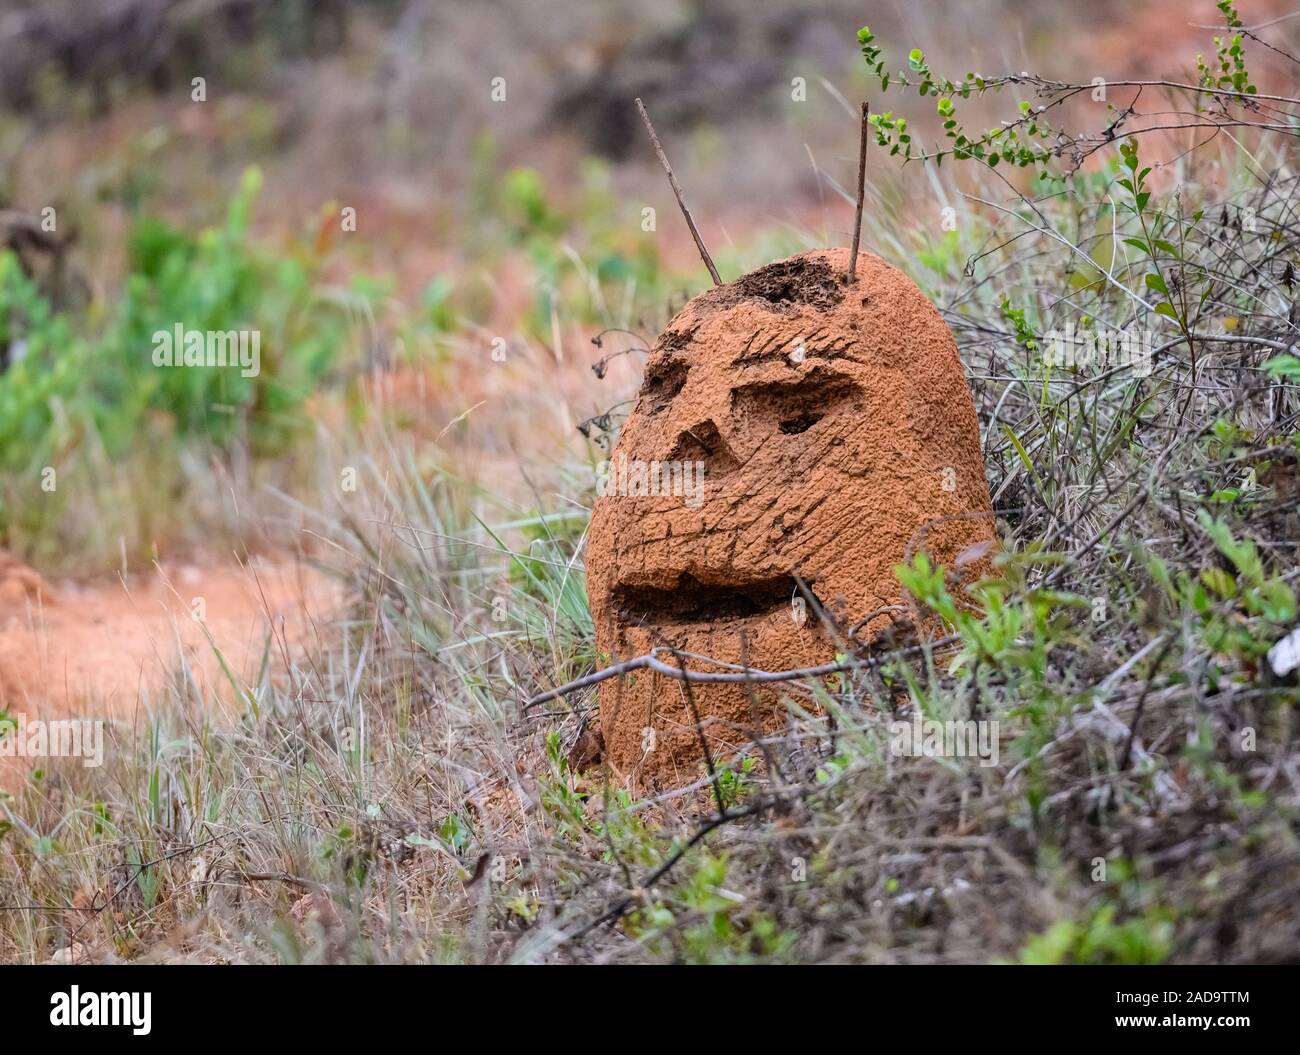 Prankster sculpté un visage humain sur un mont ant dans le Cerrado de Minas Gerais, Brésil, ne l'Amérique du Sud. Banque D'Images